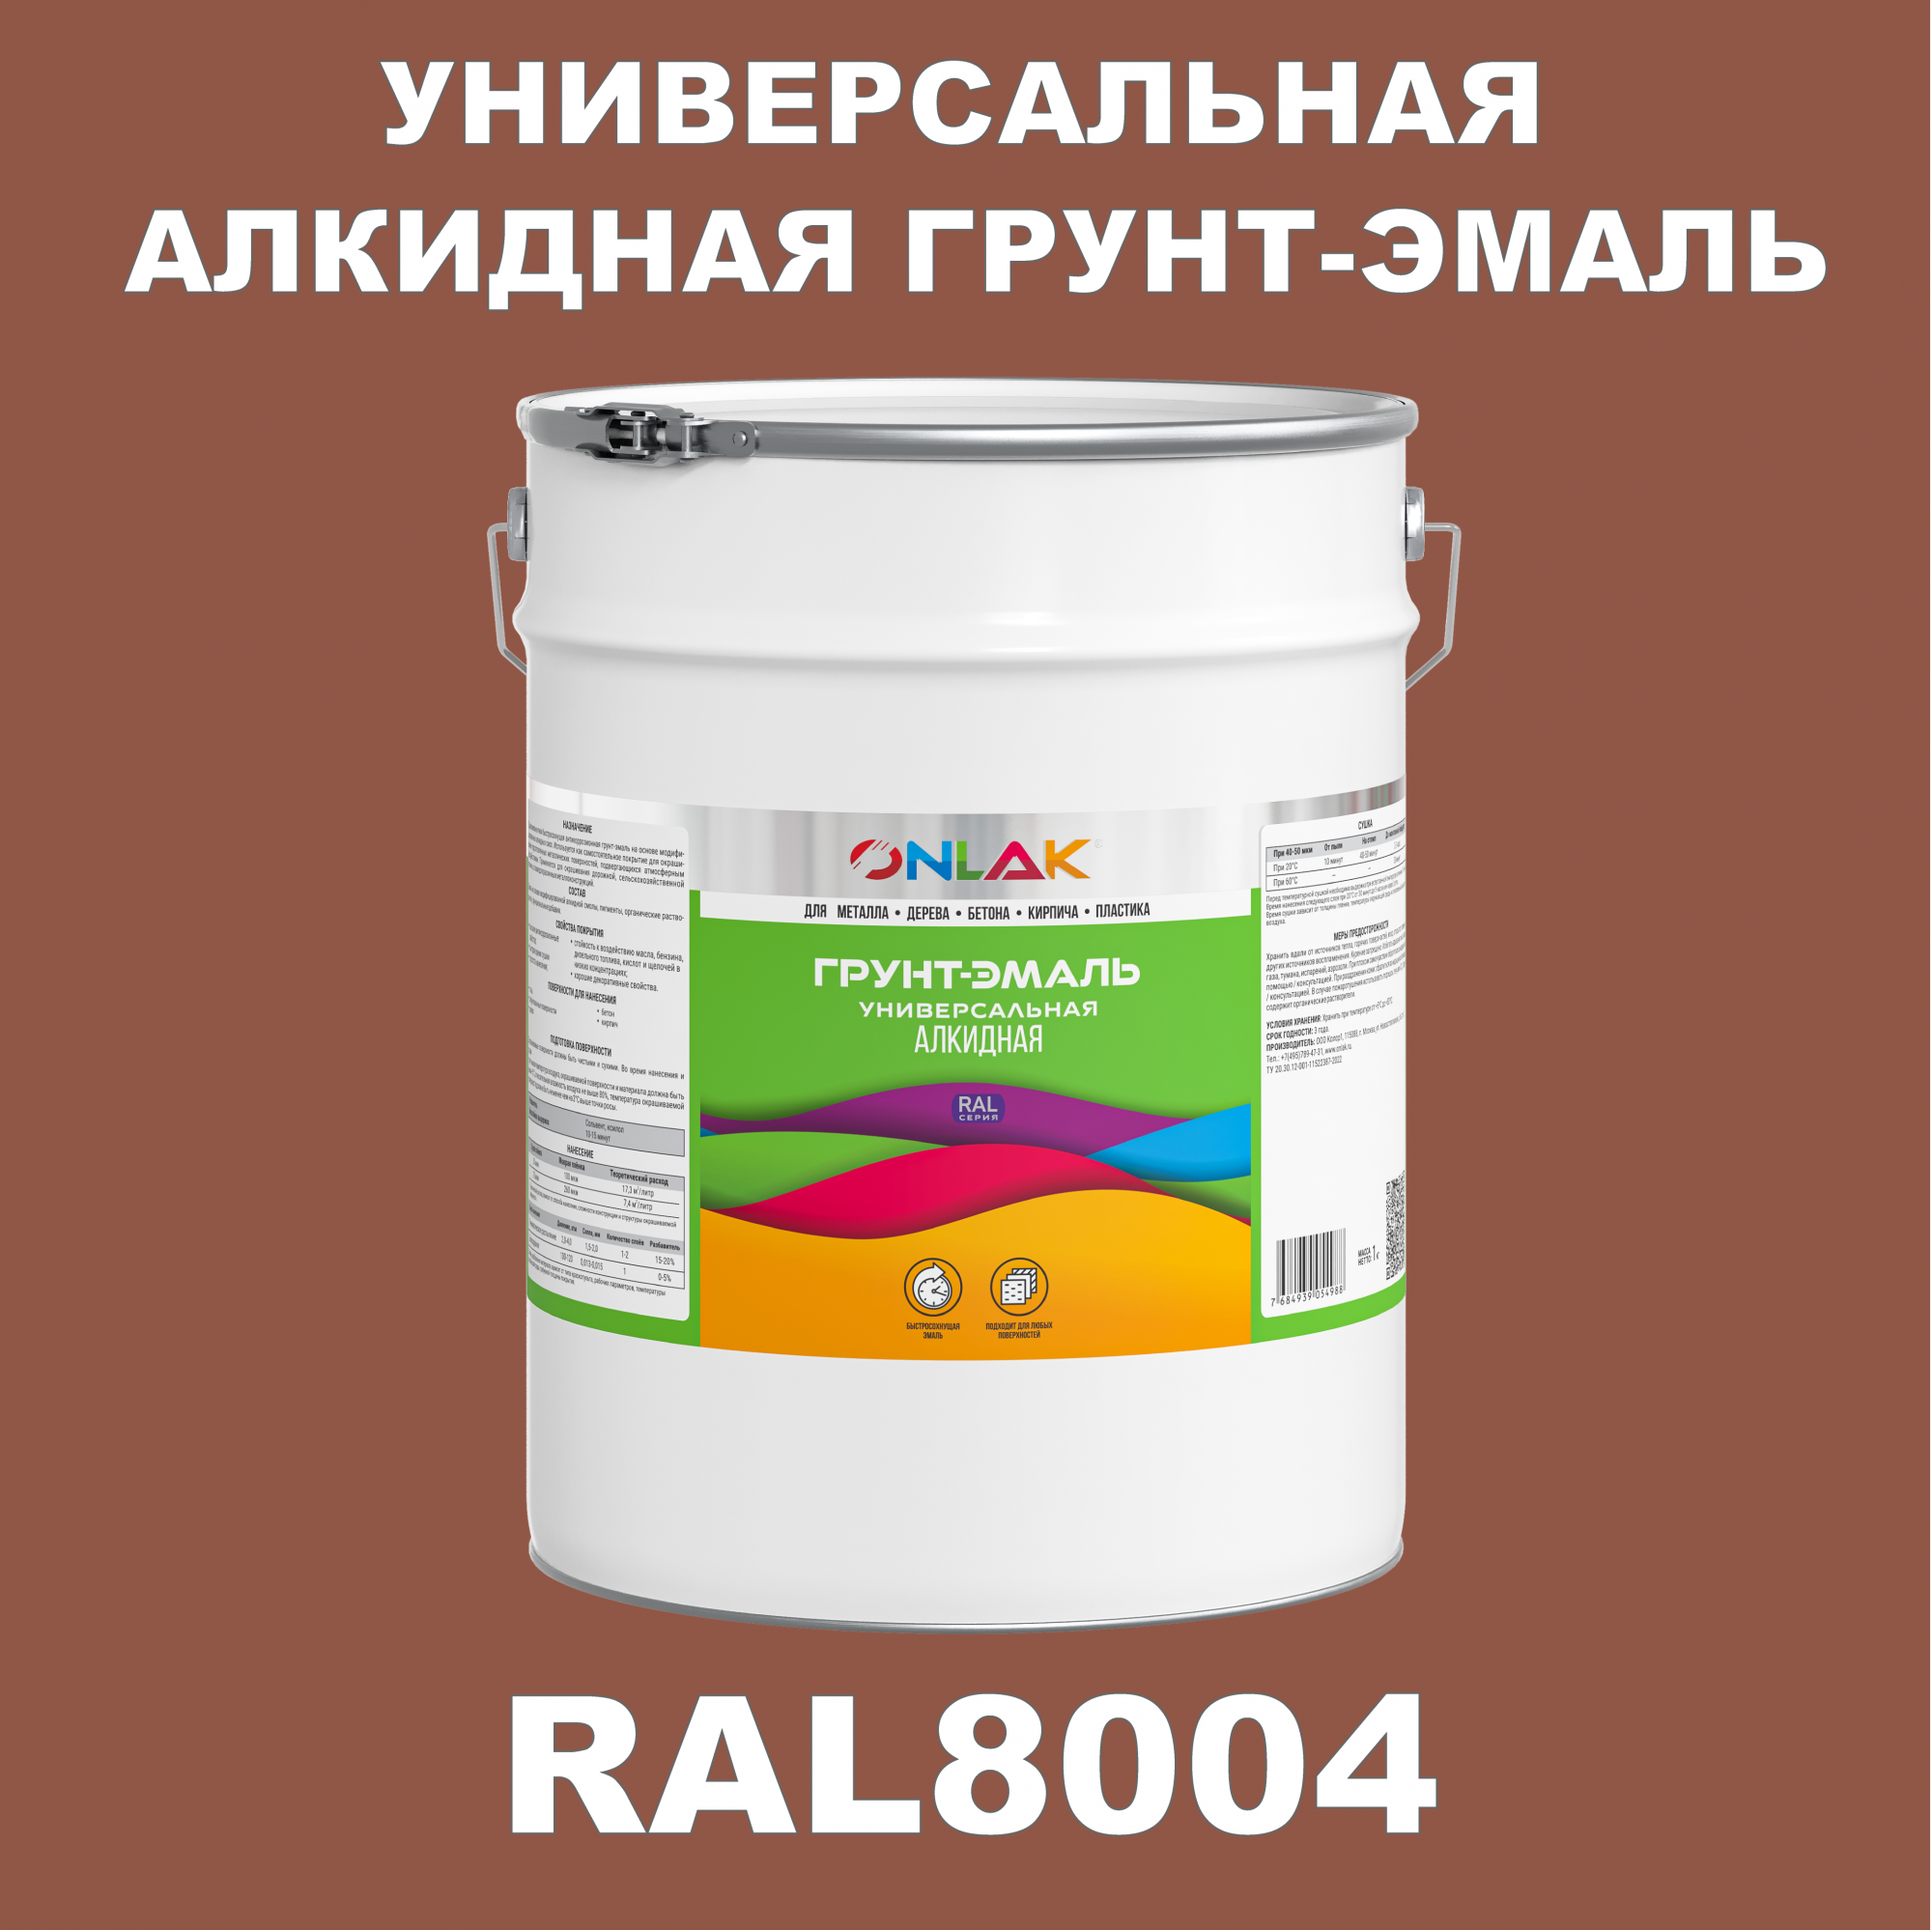 Грунт-эмаль ONLAK 1К RAL8004 антикоррозионная алкидная по металлу по ржавчине 20 кг грунт эмаль yollo по ржавчине алкидная синяя 0 9 кг